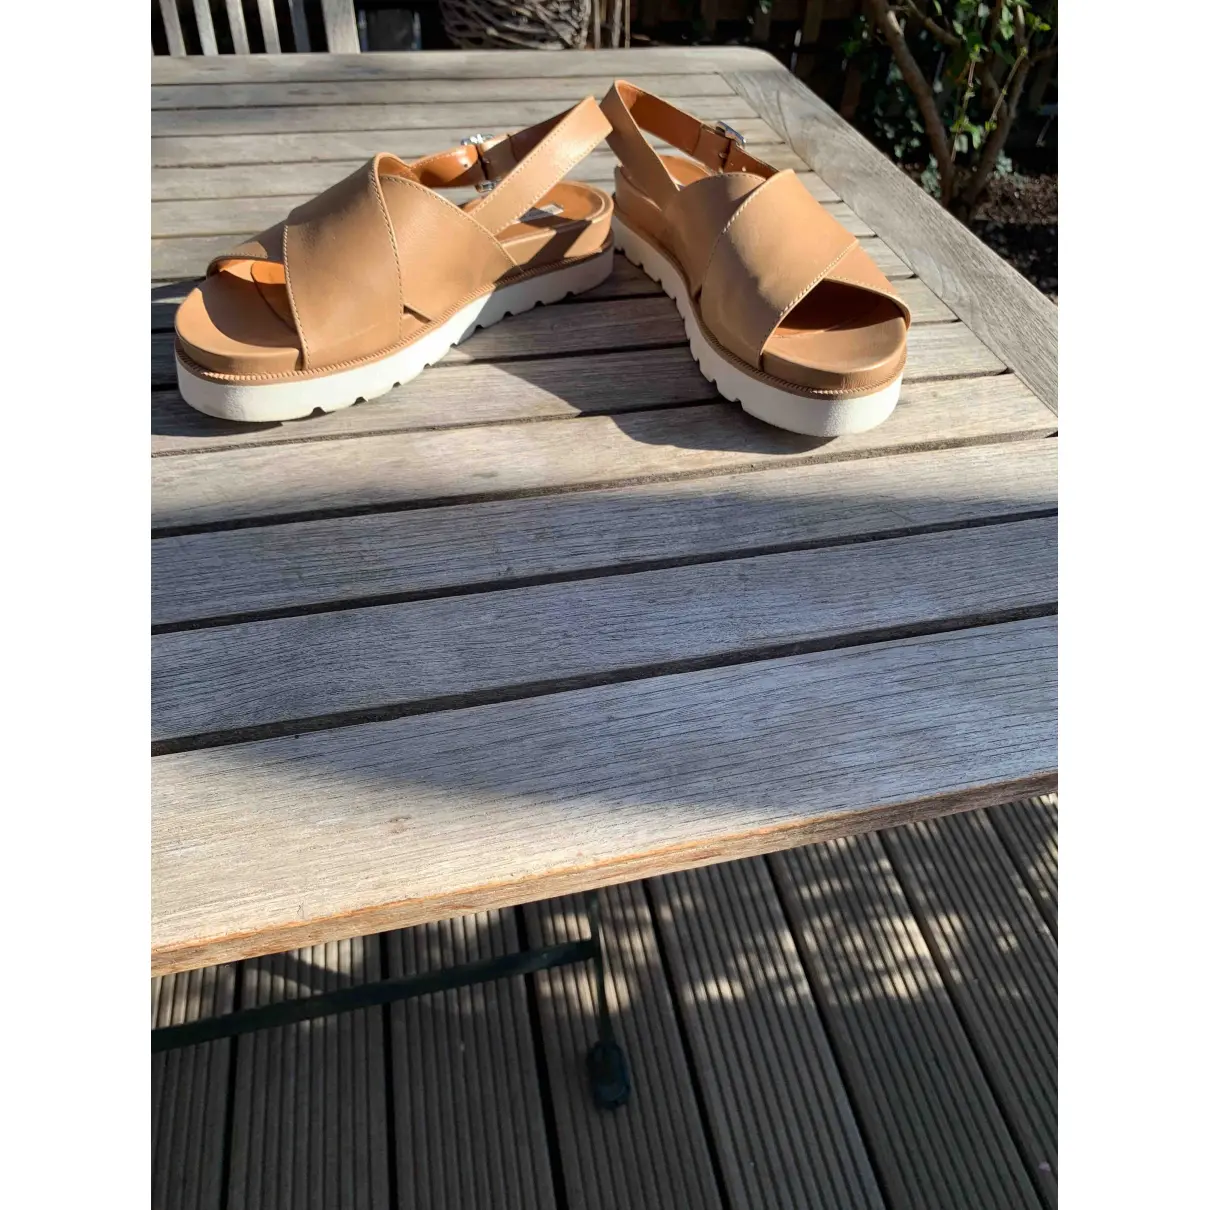 Buy Fabio Rusconi Leather sandals online